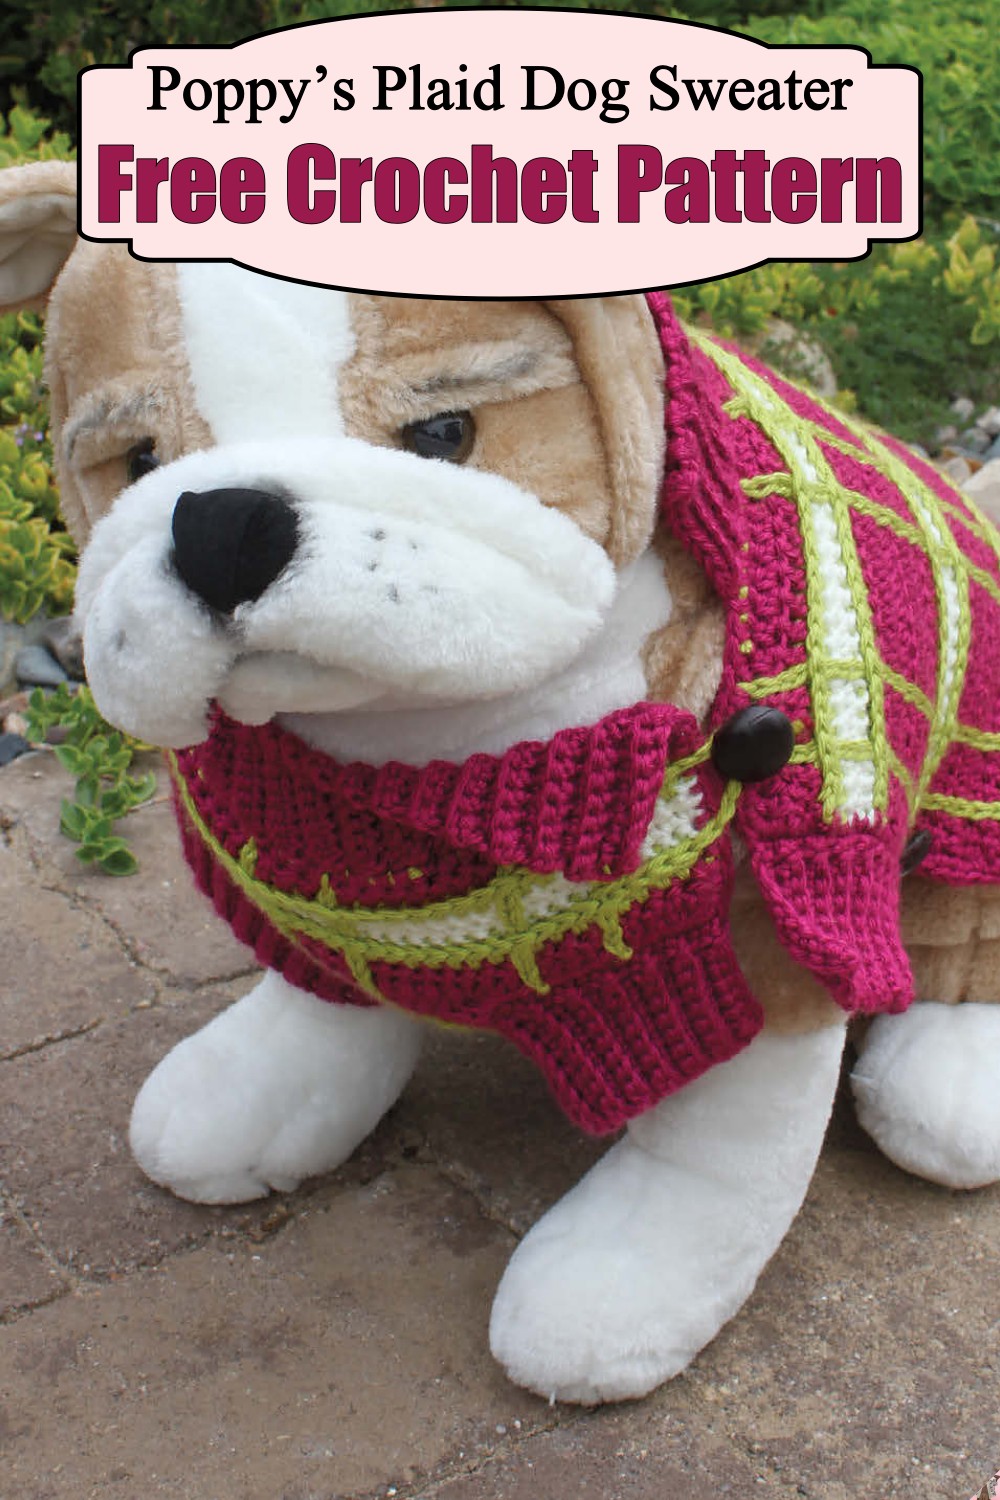 Poppy’s Plaid Dog Sweater